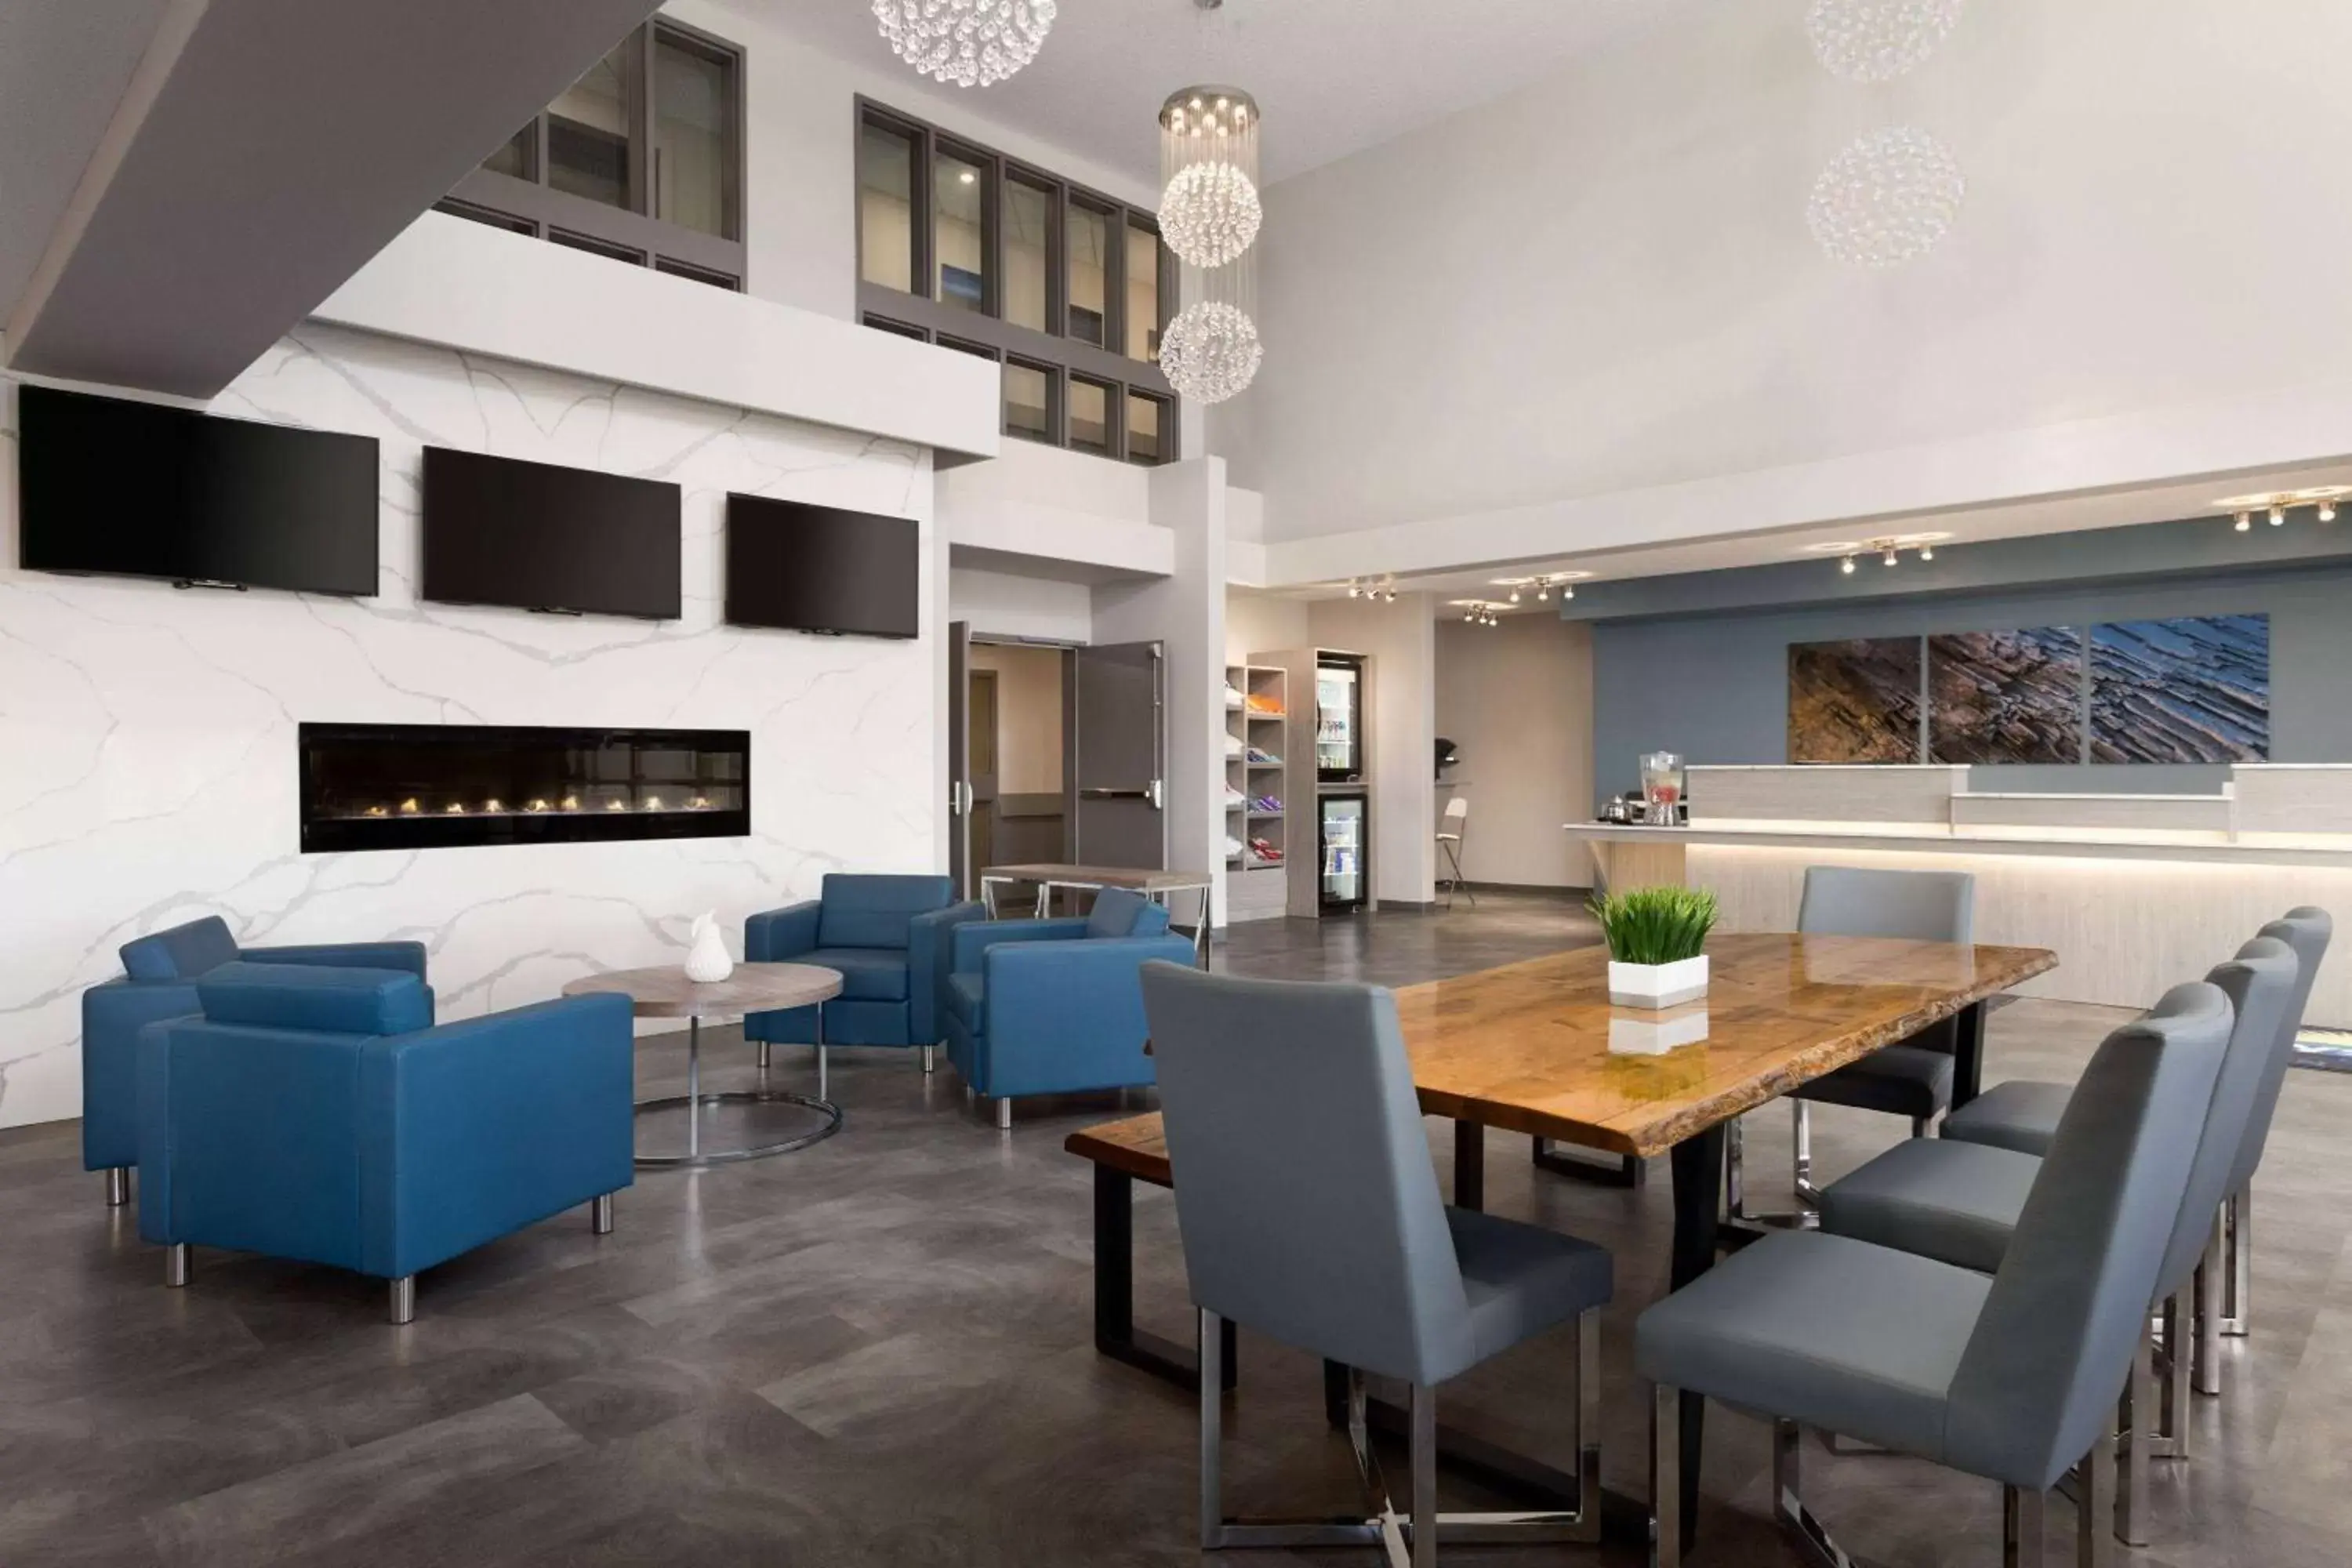 Lobby or reception, Dining Area in Days Inn by Wyndham Calgary North Balzac